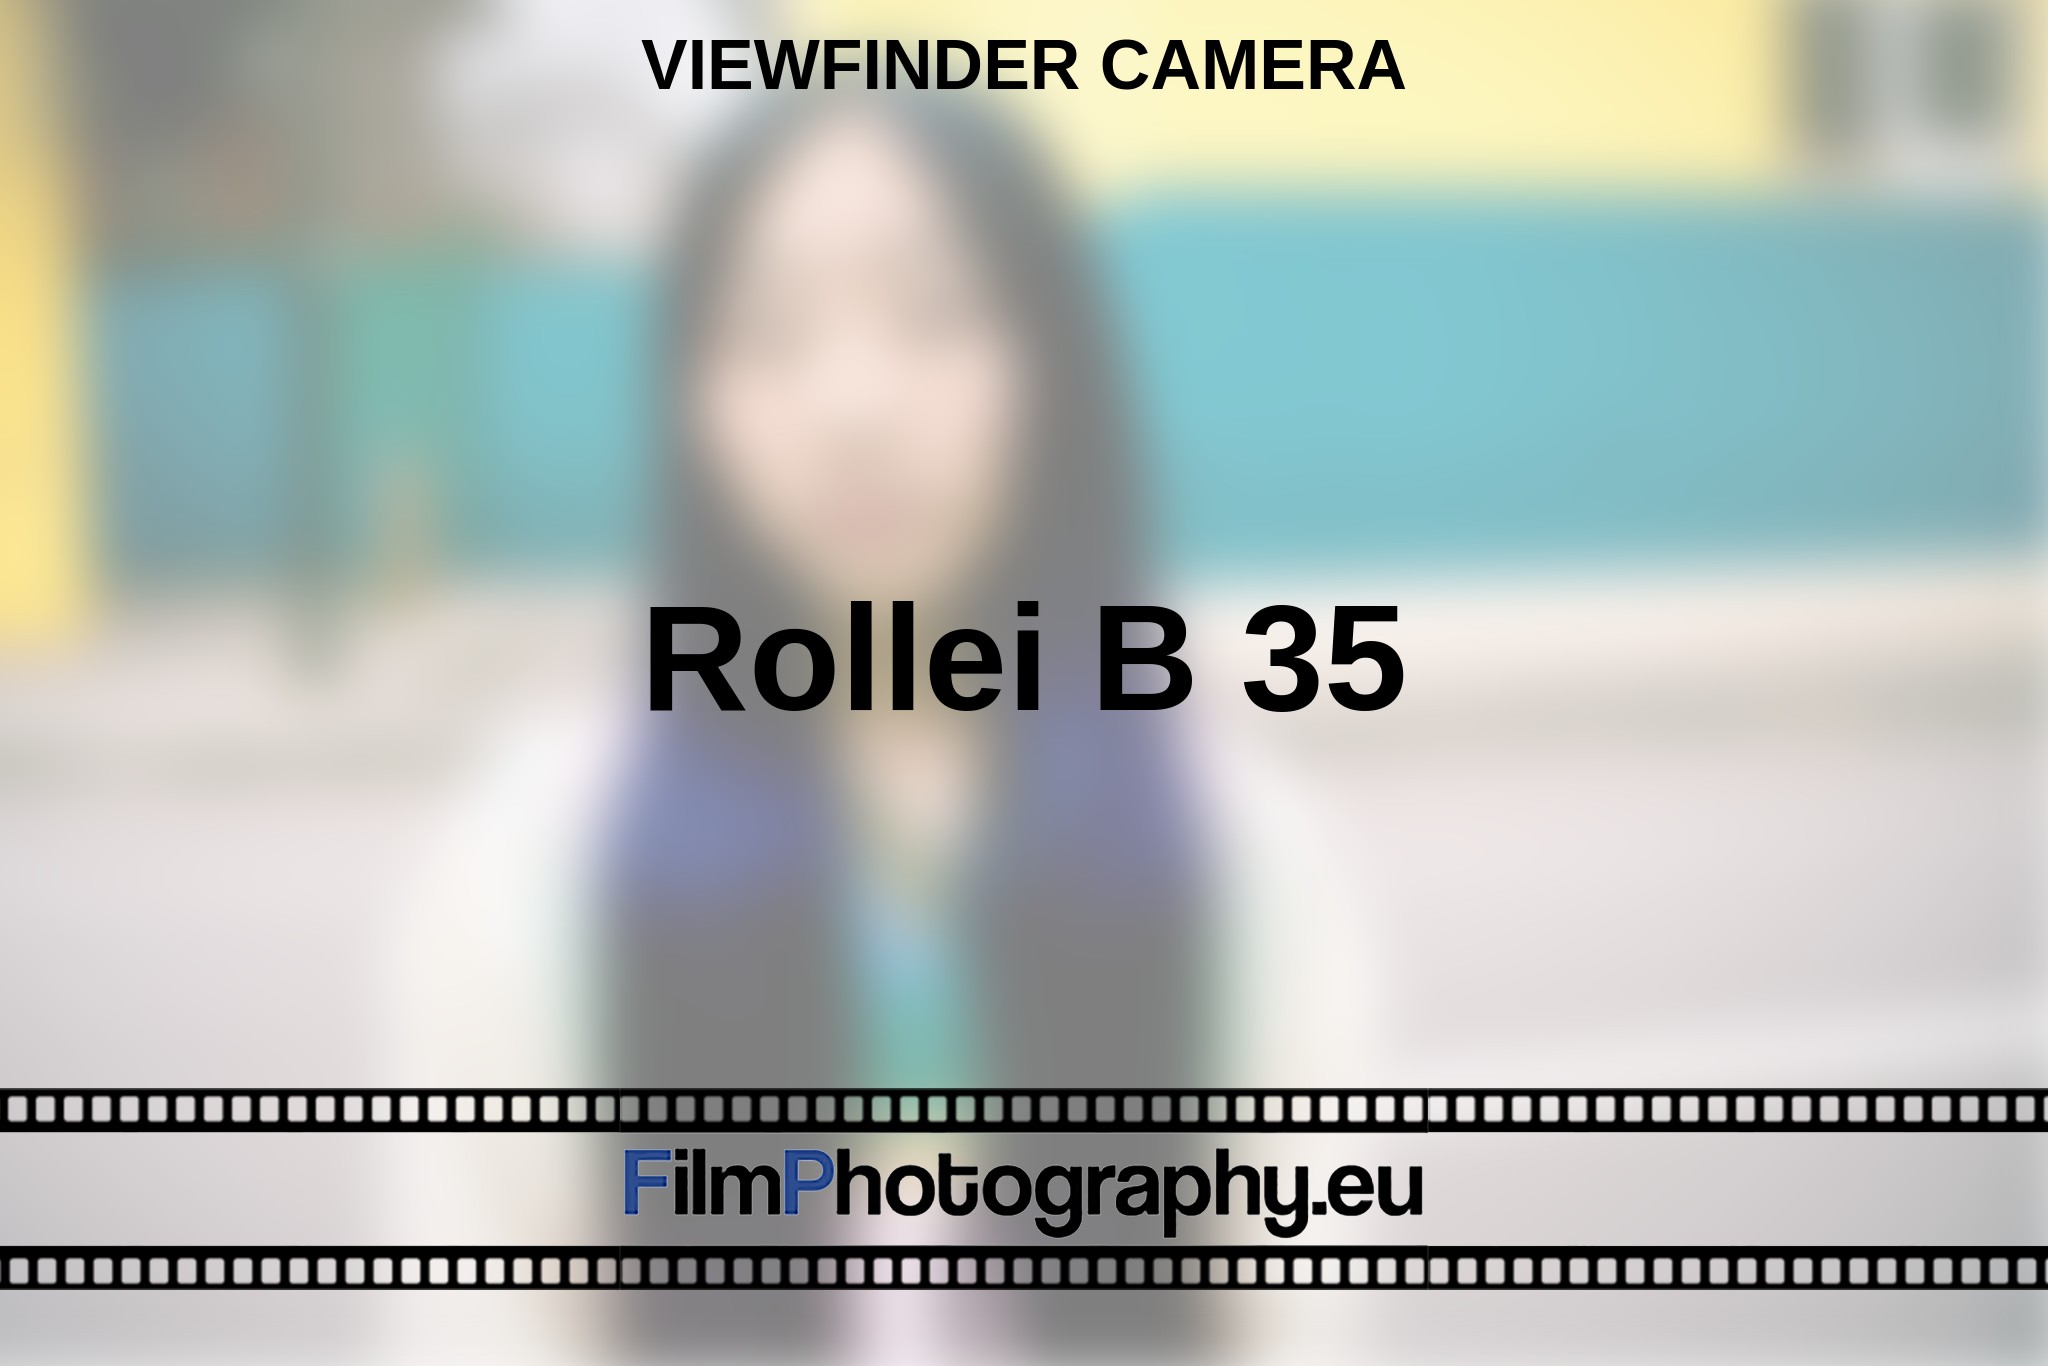 rollei-b-35-viewfinder-camera-en-bnv.jpg